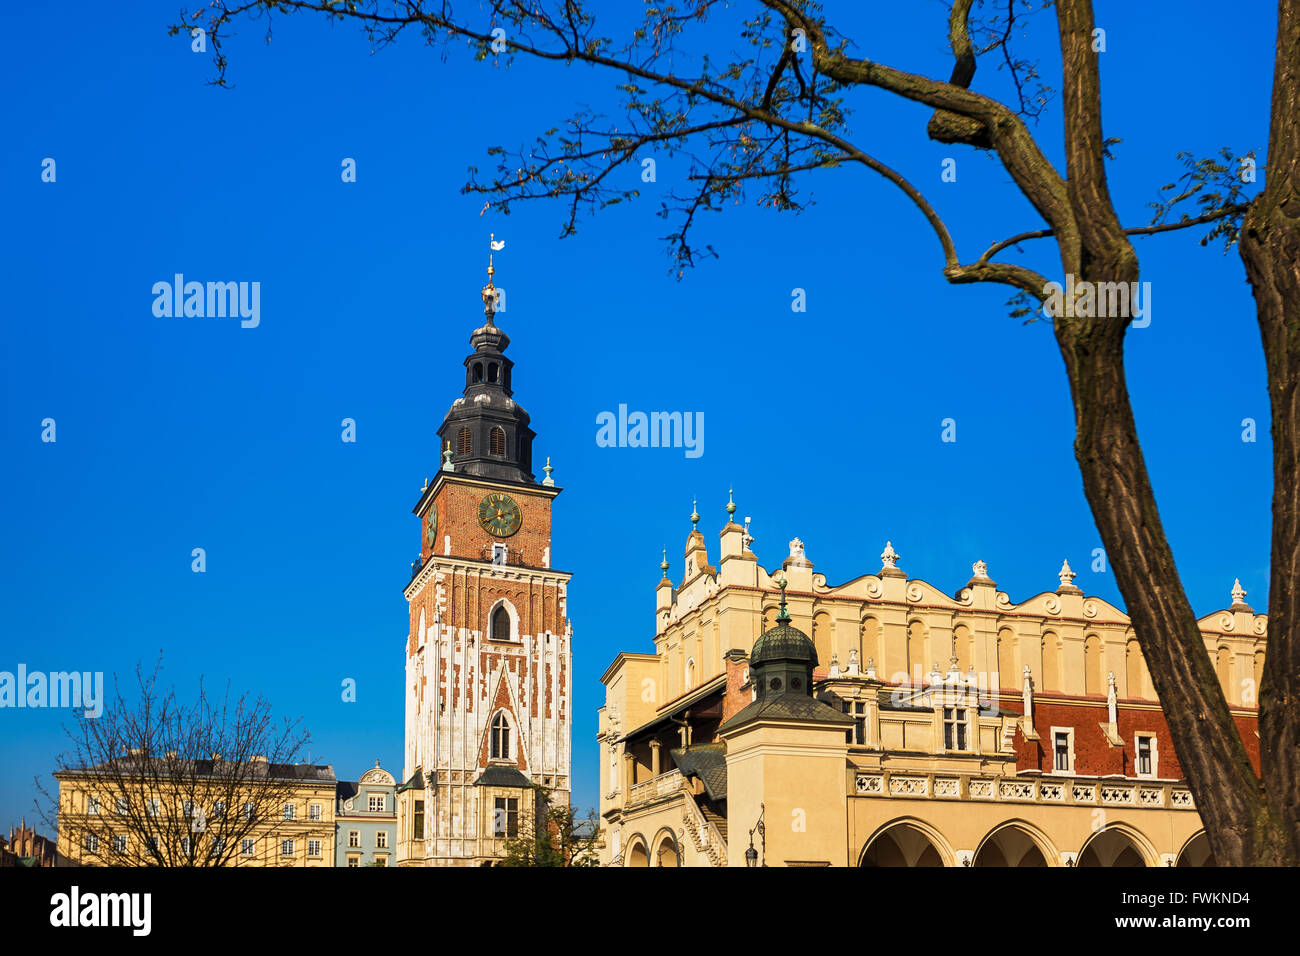 Turm des Rathauses am Markt Platz von Krakau, Polen Stockfoto